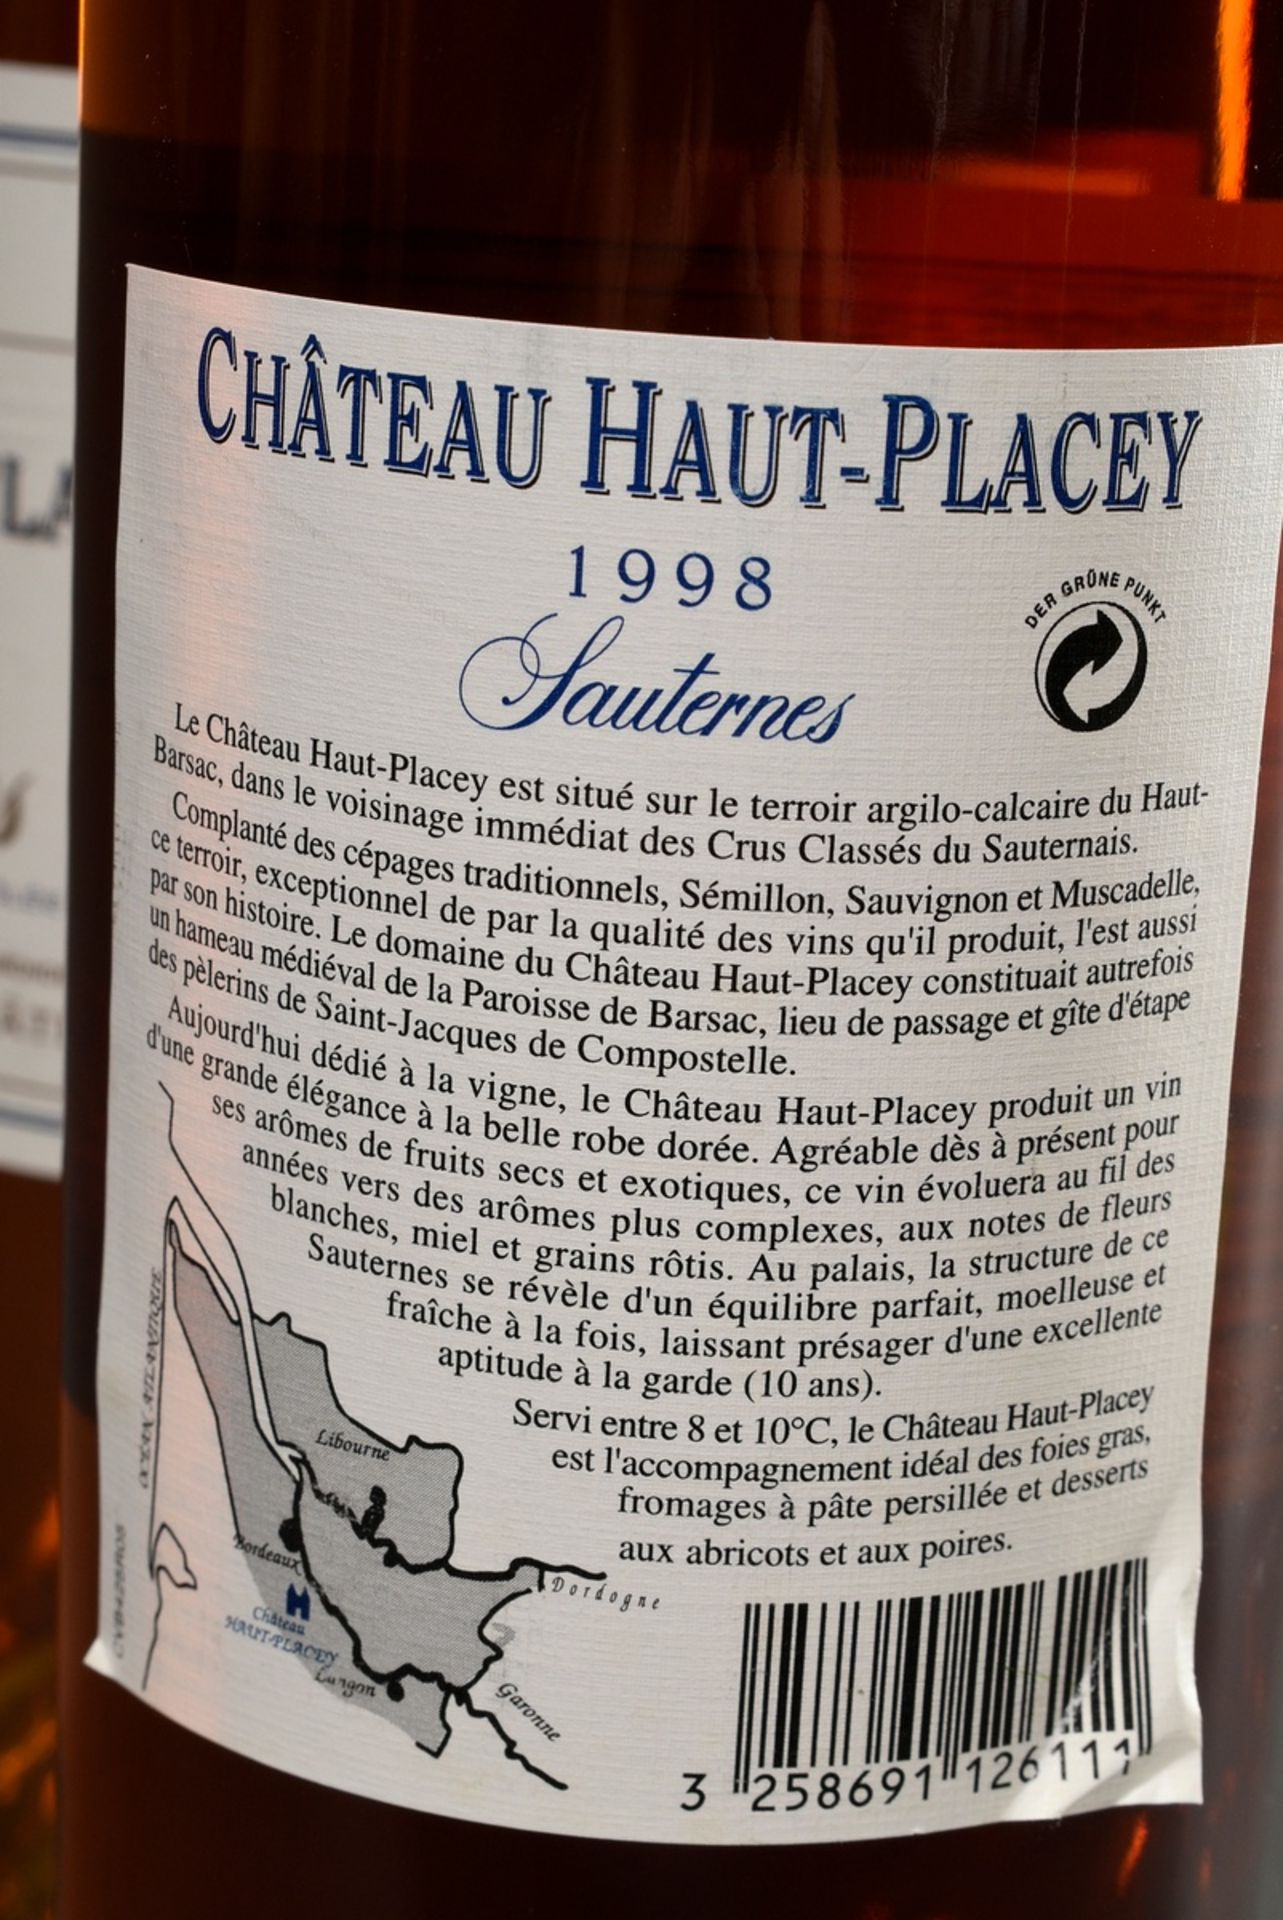 2 Flaschen 1998 Chateau Haut-Placey, Sauternes, Craveia-Goyaud, 0,75l, durchgehend gute Kellerlager - Bild 3 aus 5